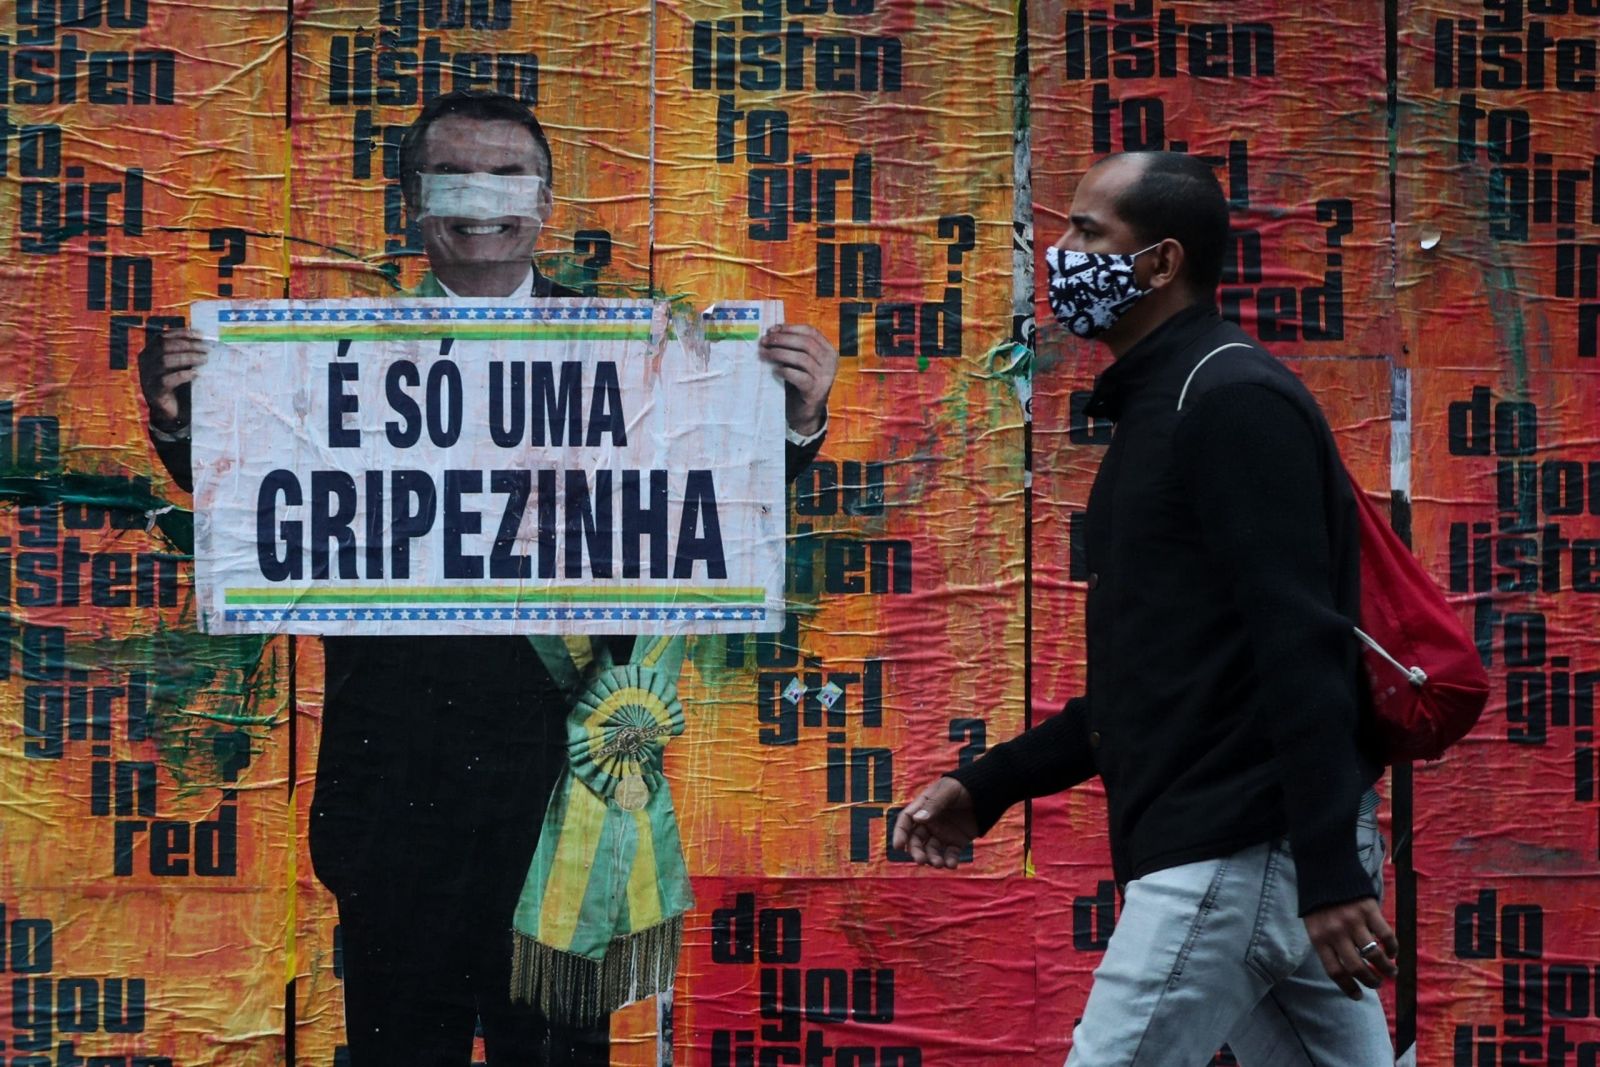 El Covid-19, hace estragos en Brasil, la pandemia está totalmente descontrolada 